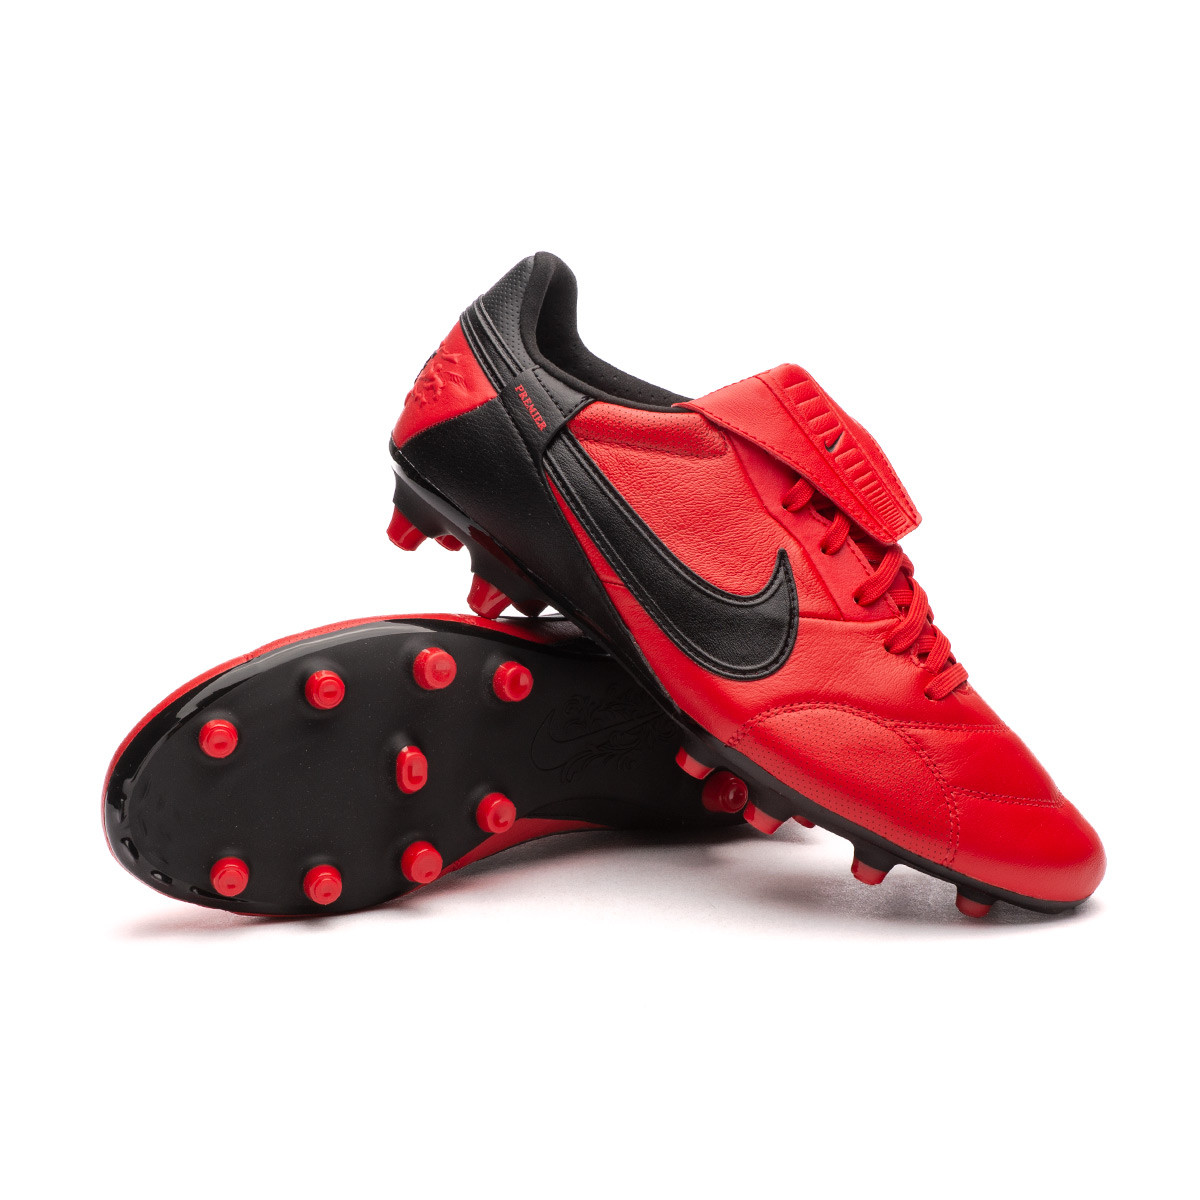 Arenoso ir de compras plantador Bota de fútbol Nike The Nike Premier 3 FG University Red-Black - Fútbol  Emotion